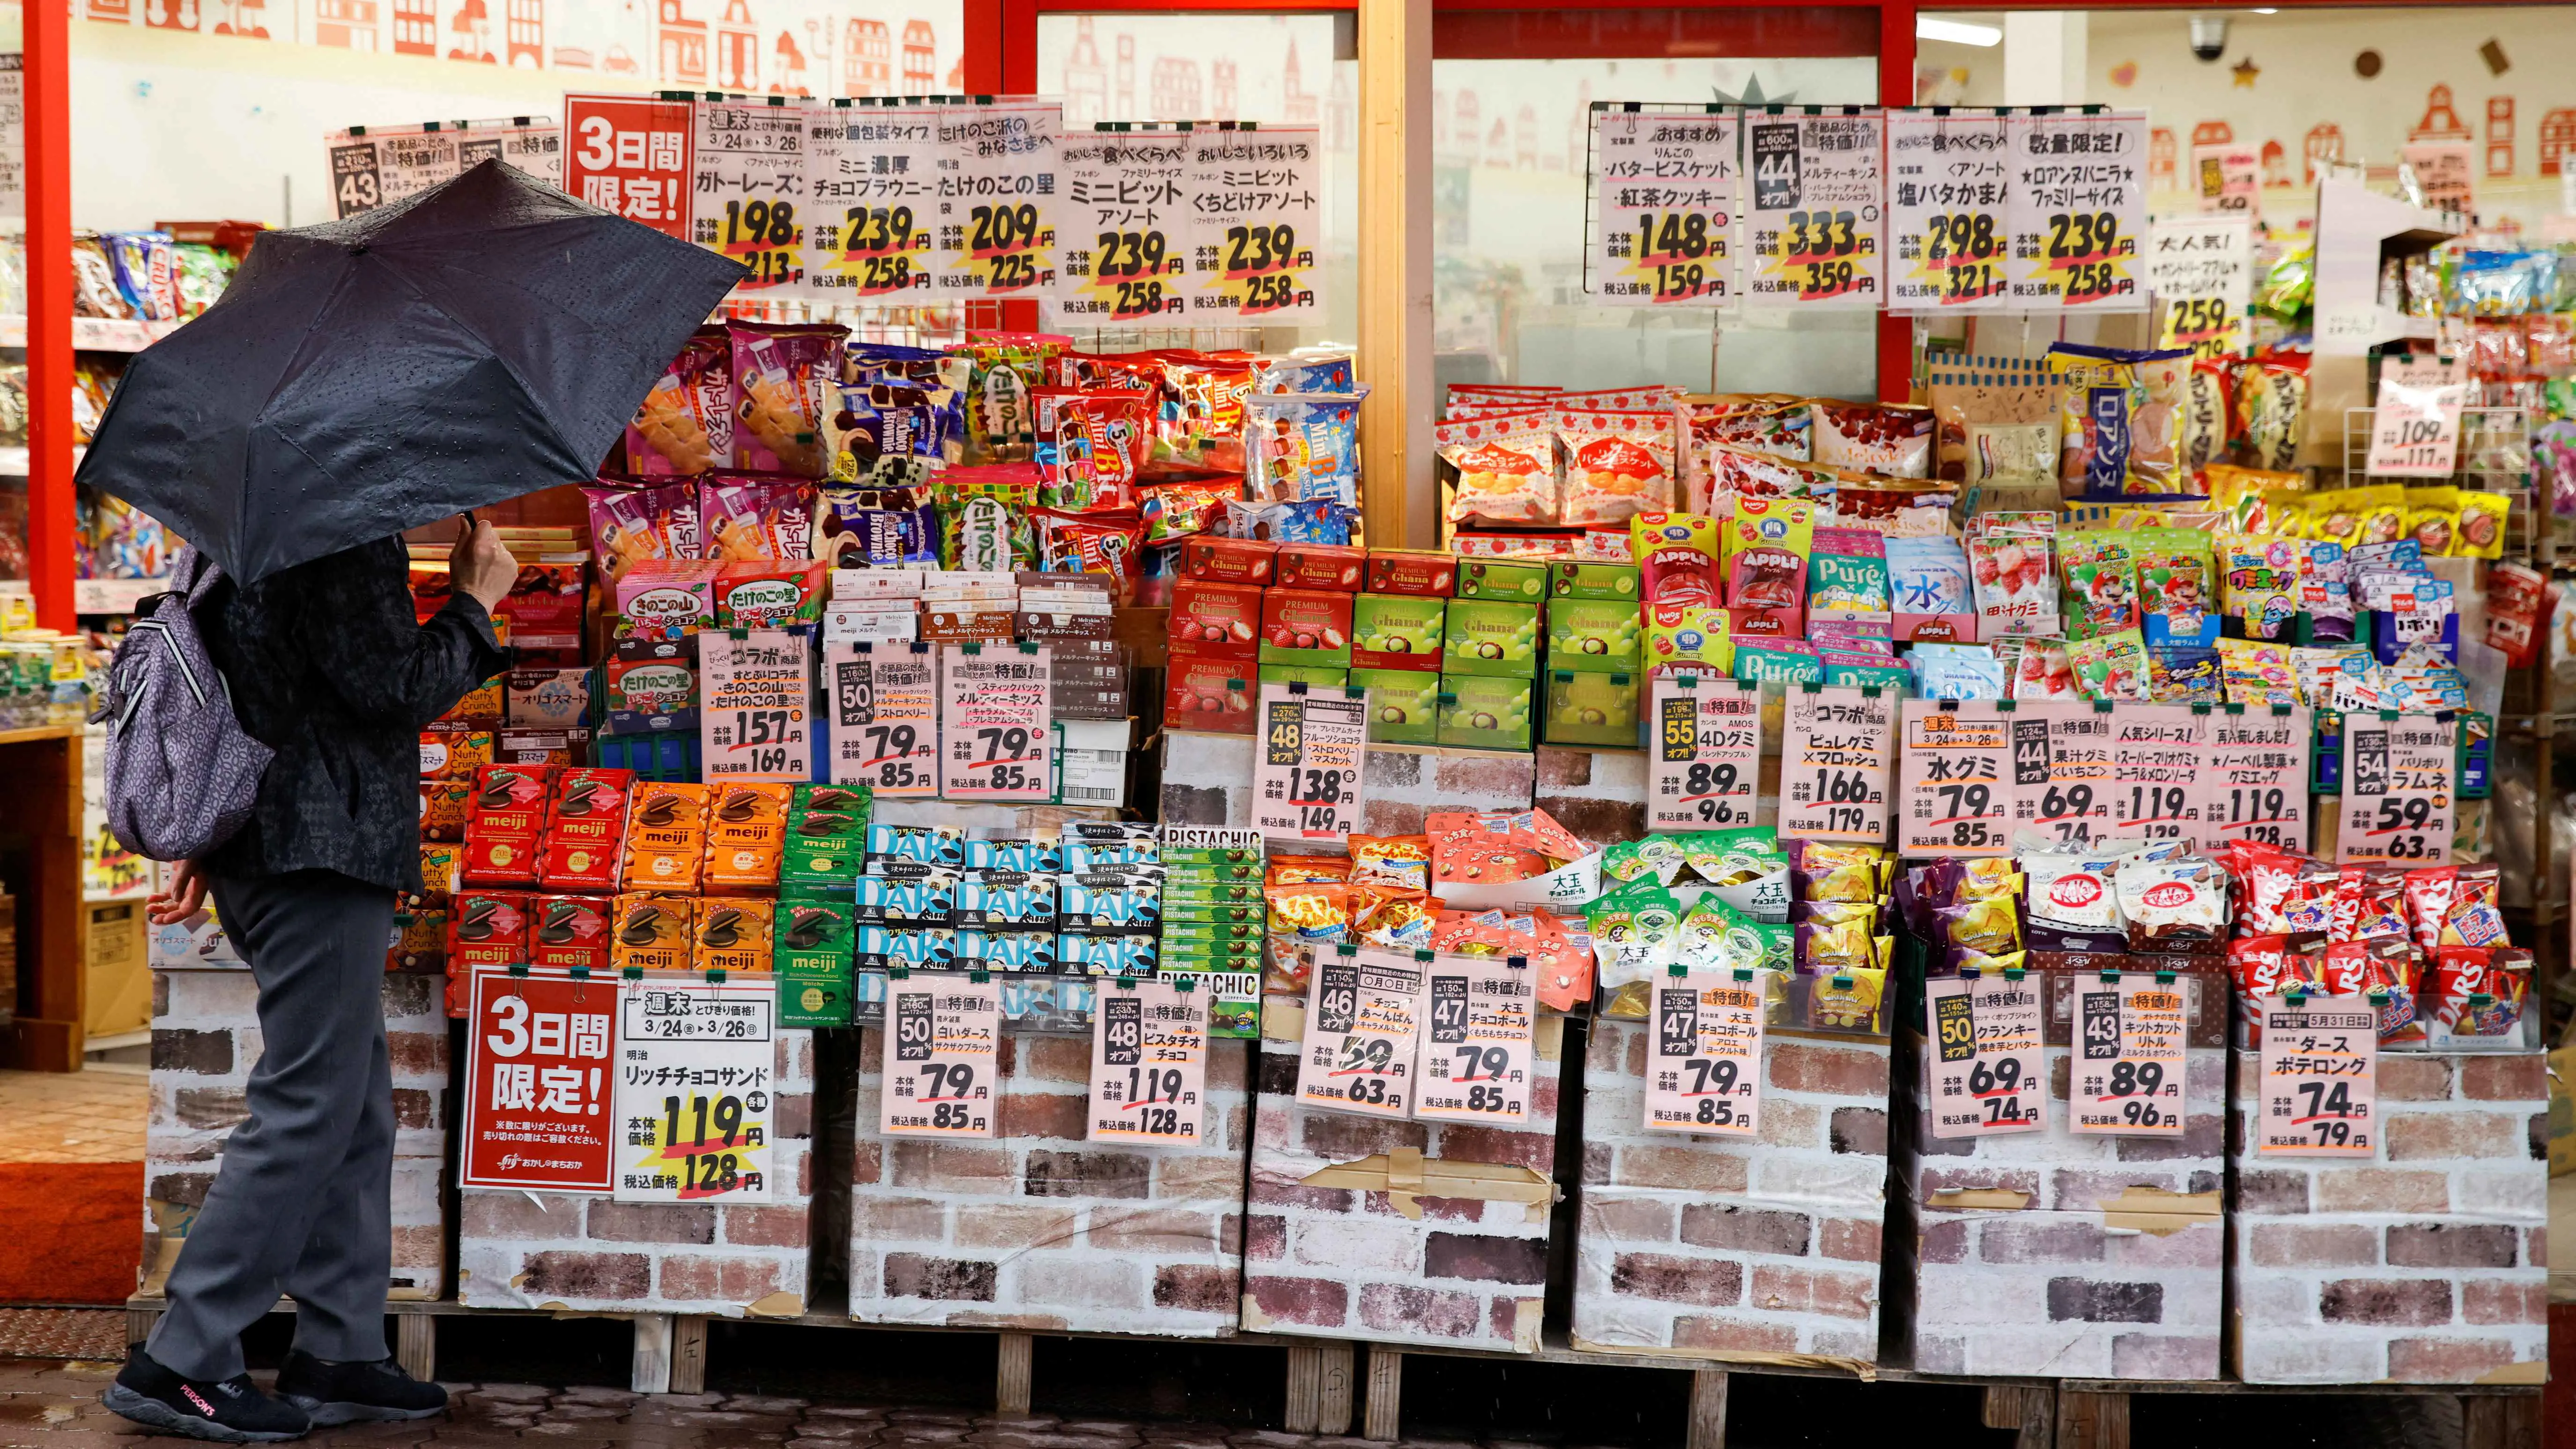 التضخم في اليابان يخرج عن التوقعات والين يتراجع خطوة للوراء